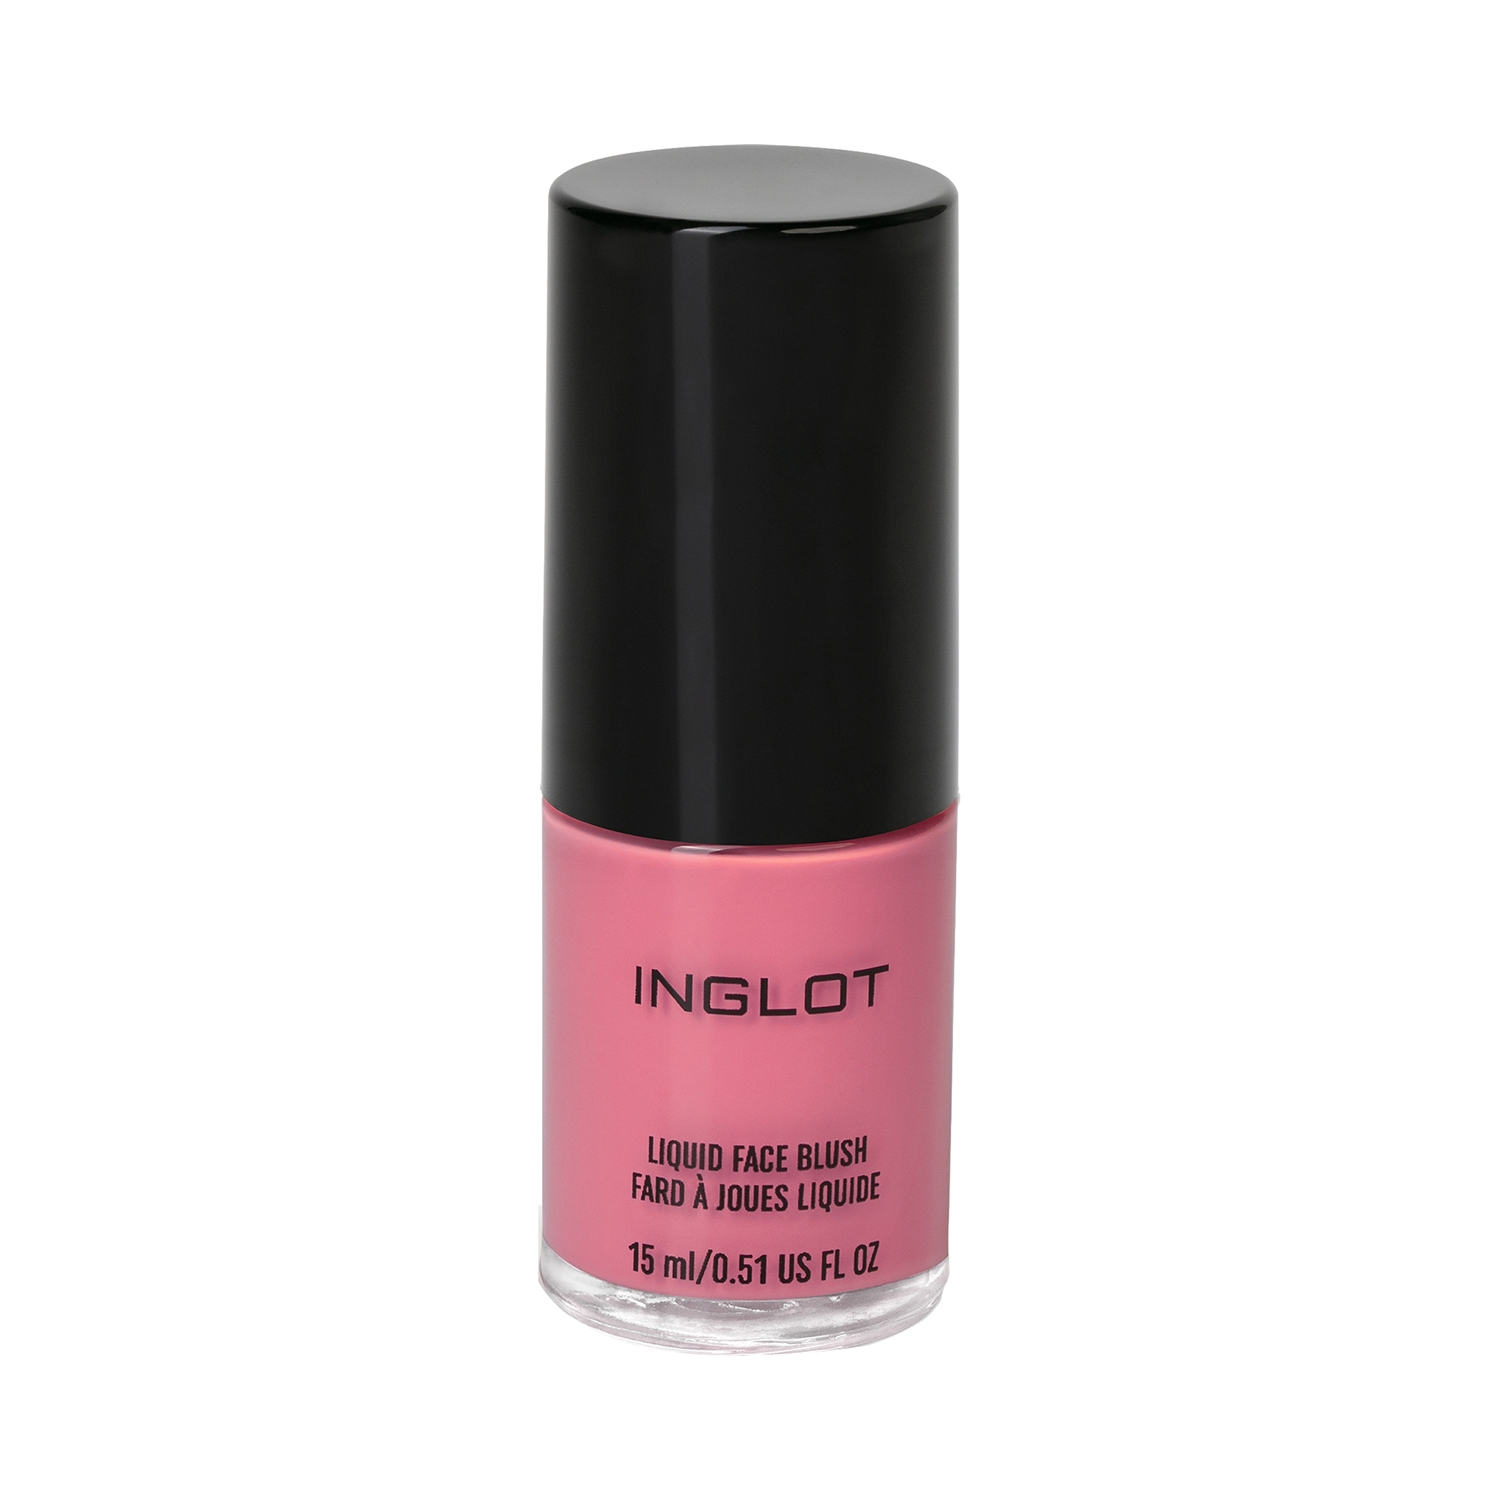 INGLOT | INGLOT Liquid Face Blush - 93 Shade (15ml)